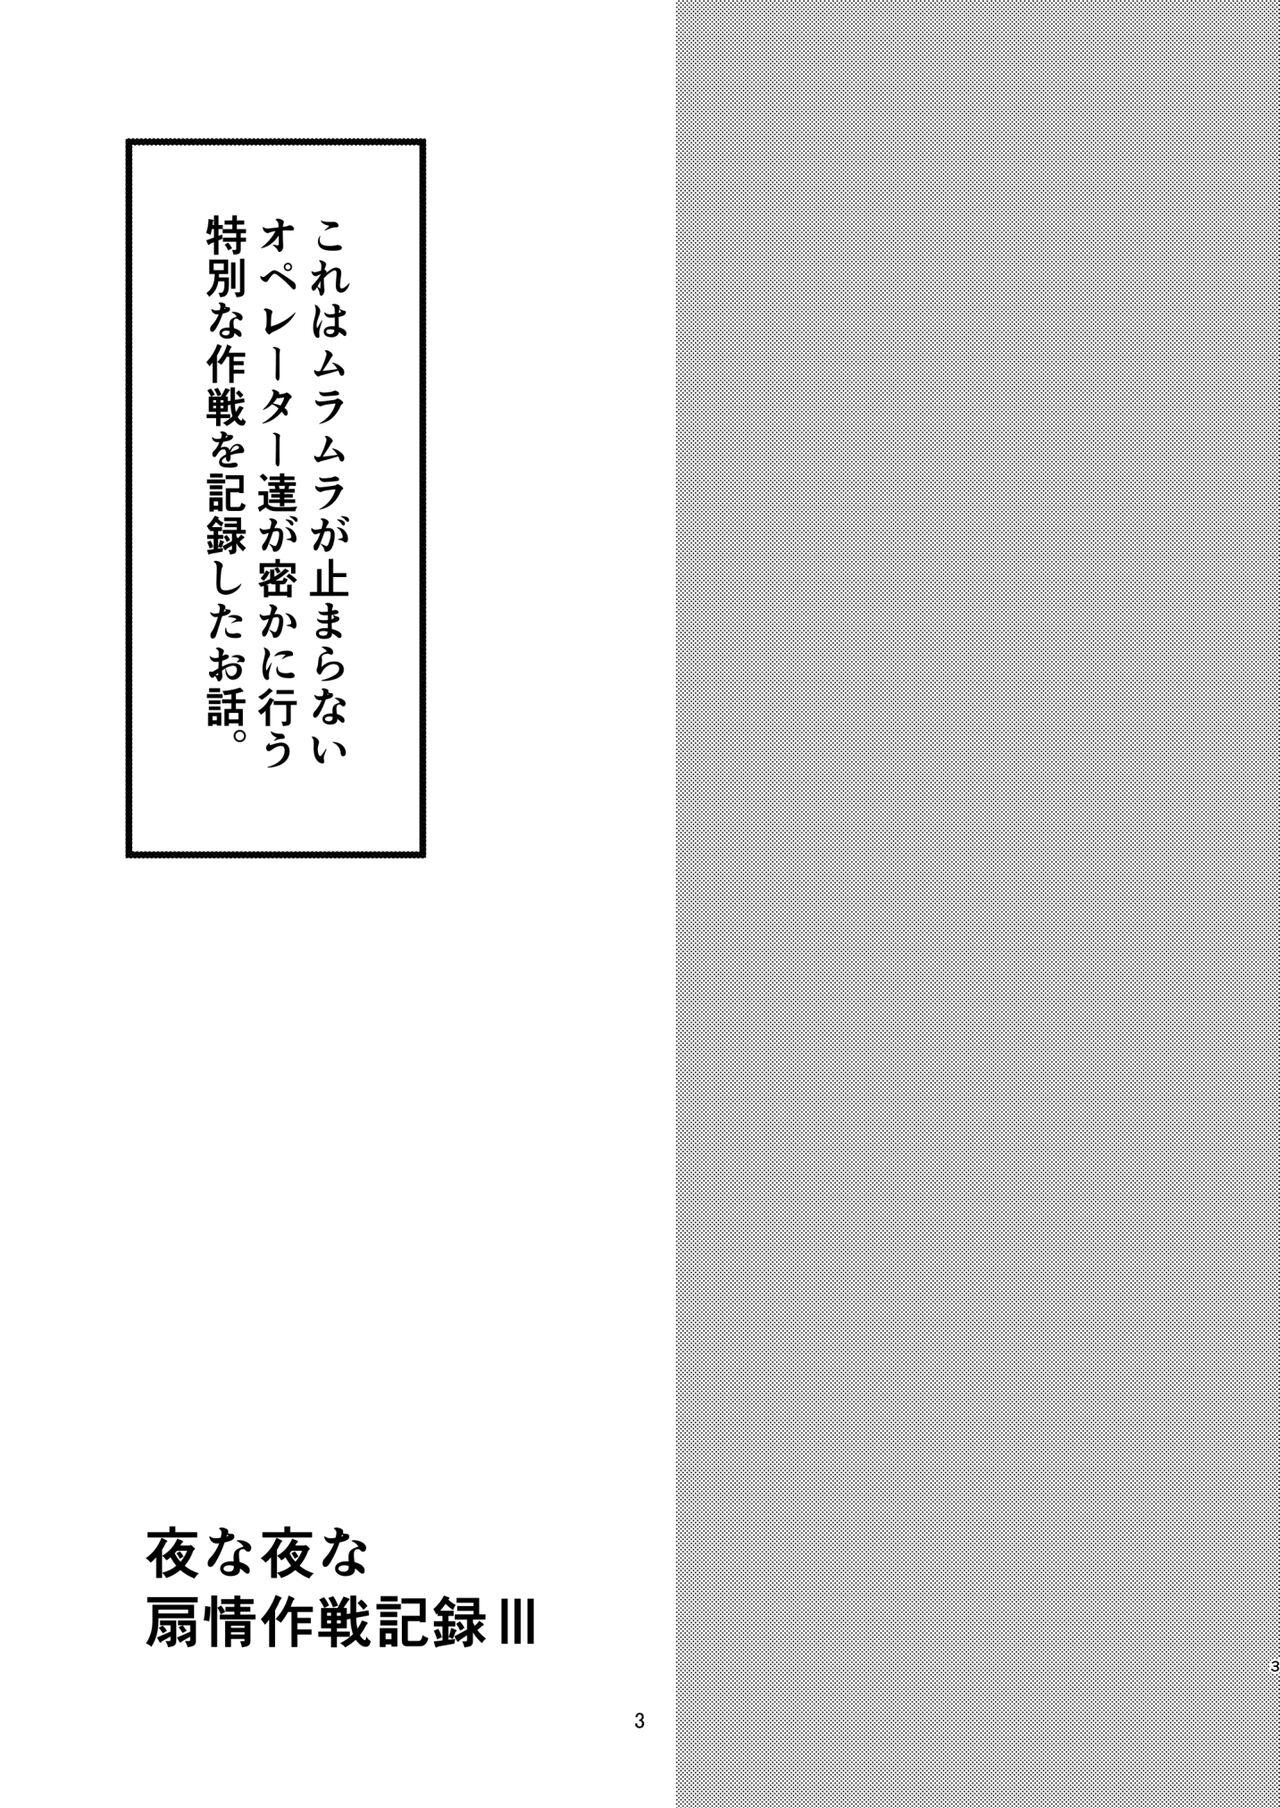 Ftvgirls Yona Yona Senjou Sakusen Kiroku III - Arknights Lesbo - Page 3